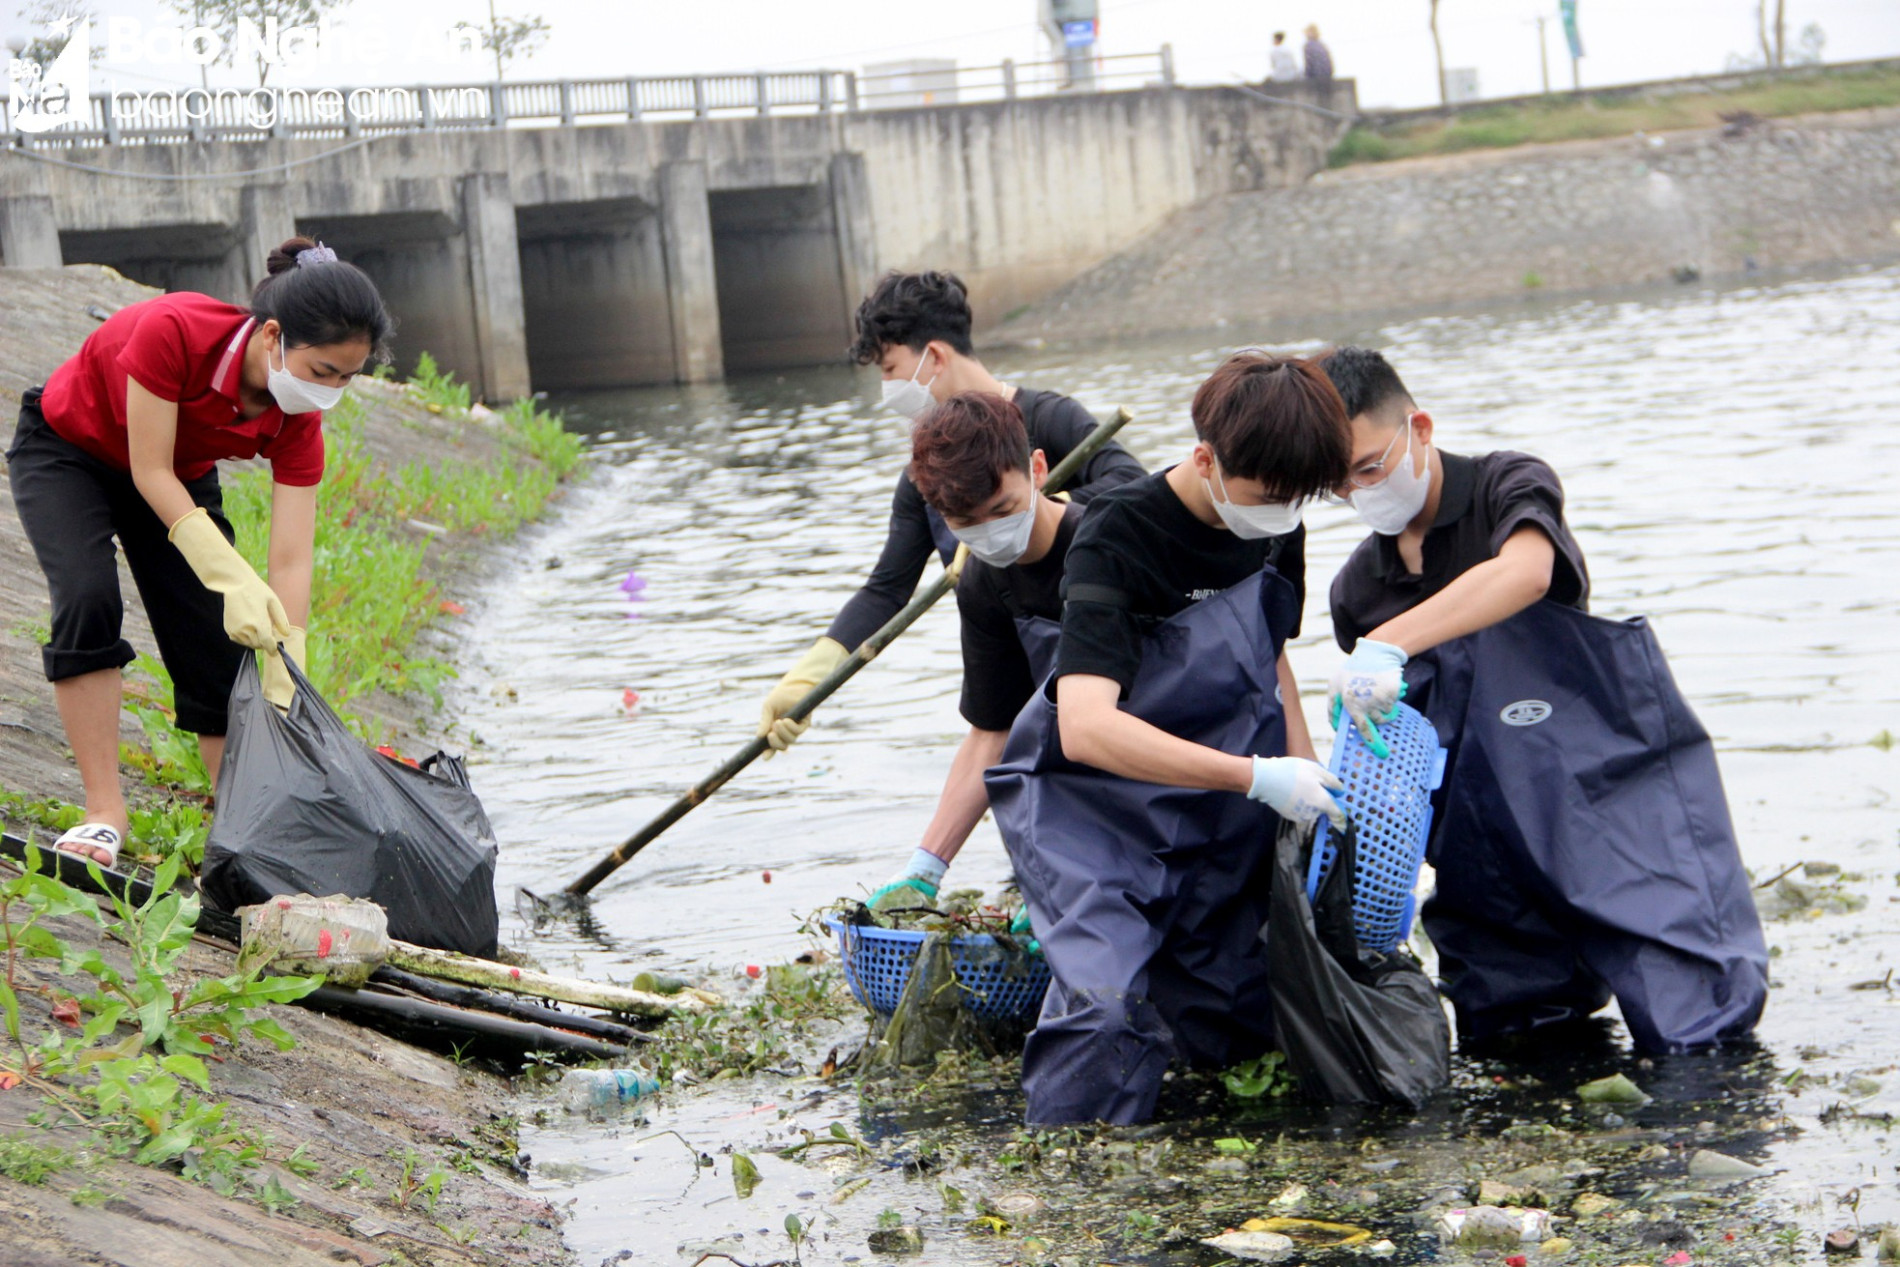 Nghệ An Xanh - Nhóm bạn trẻ gen Z tình nguyện dọn rác, làm sạch môi trường ảnh 3